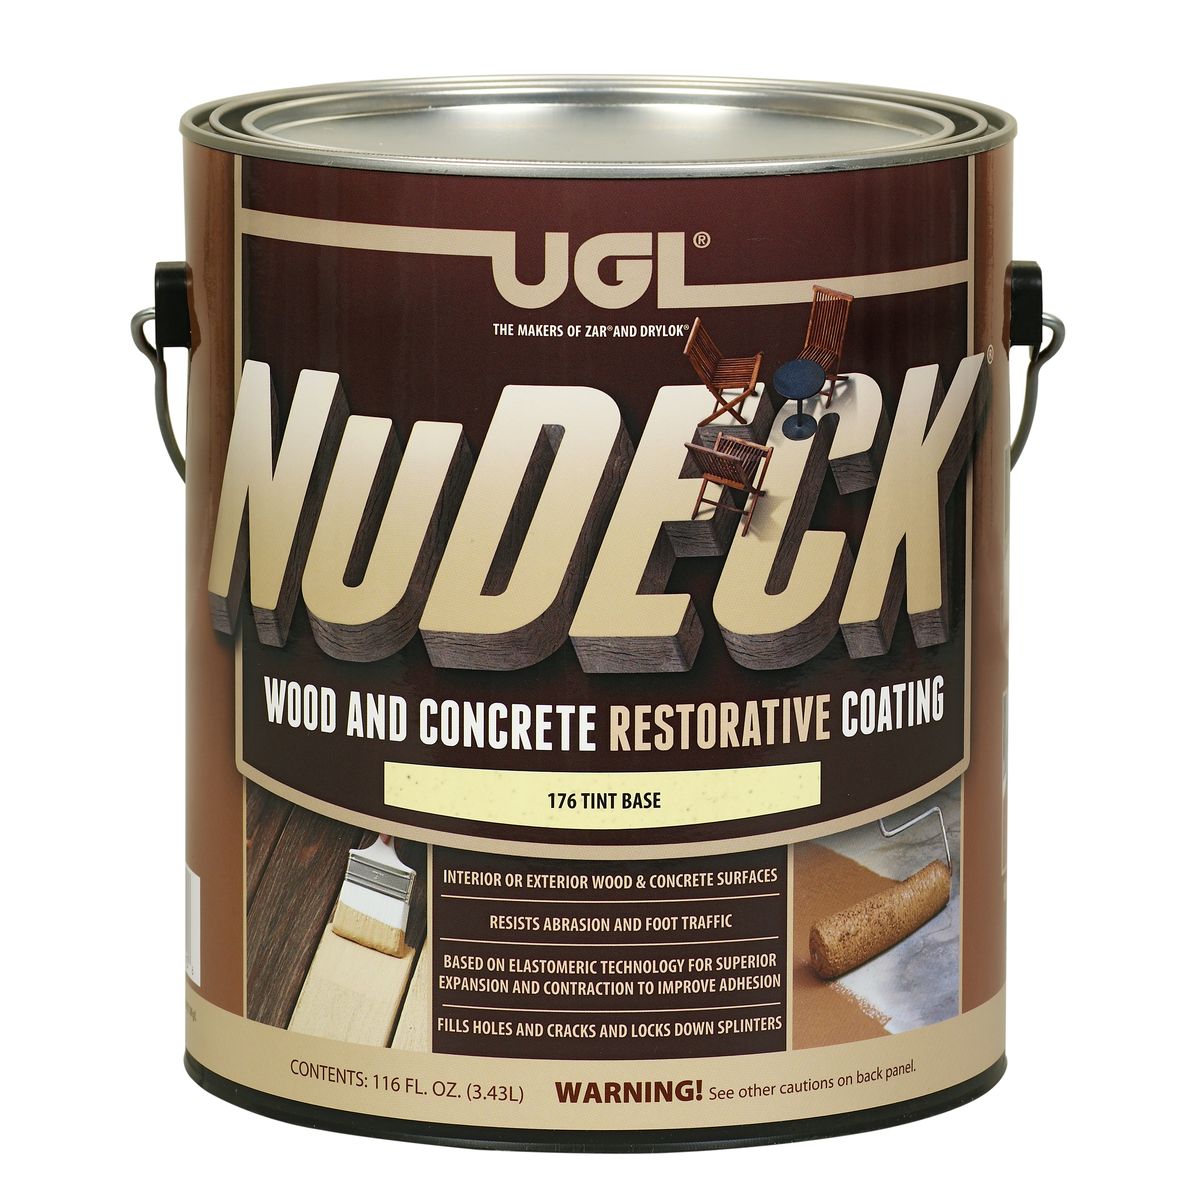 UGL introduced NuDeck